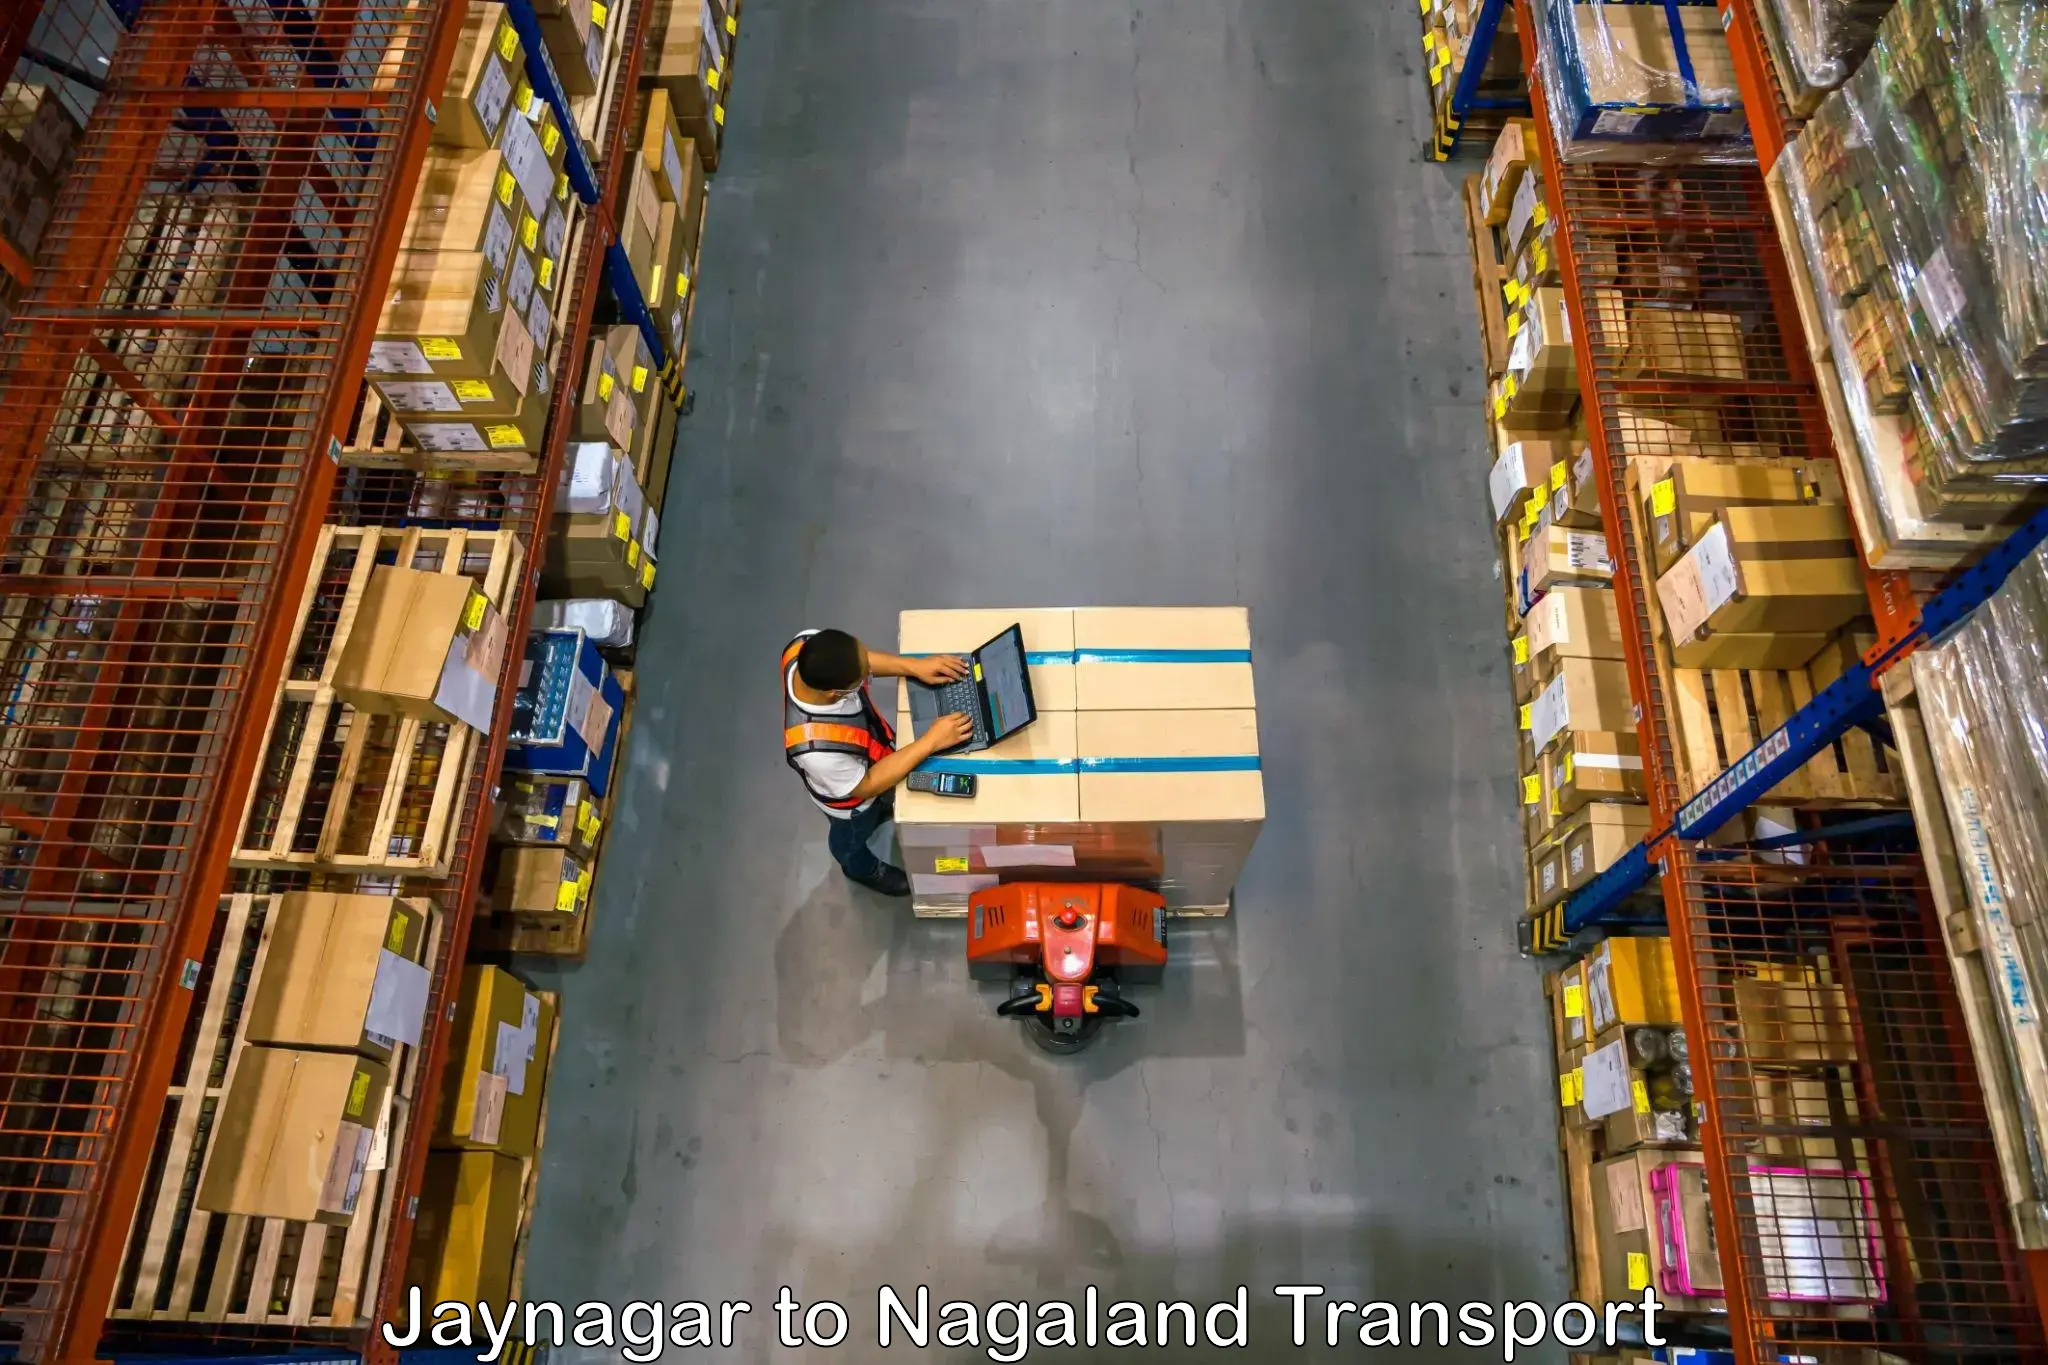 Cargo transportation services Jaynagar to Nagaland